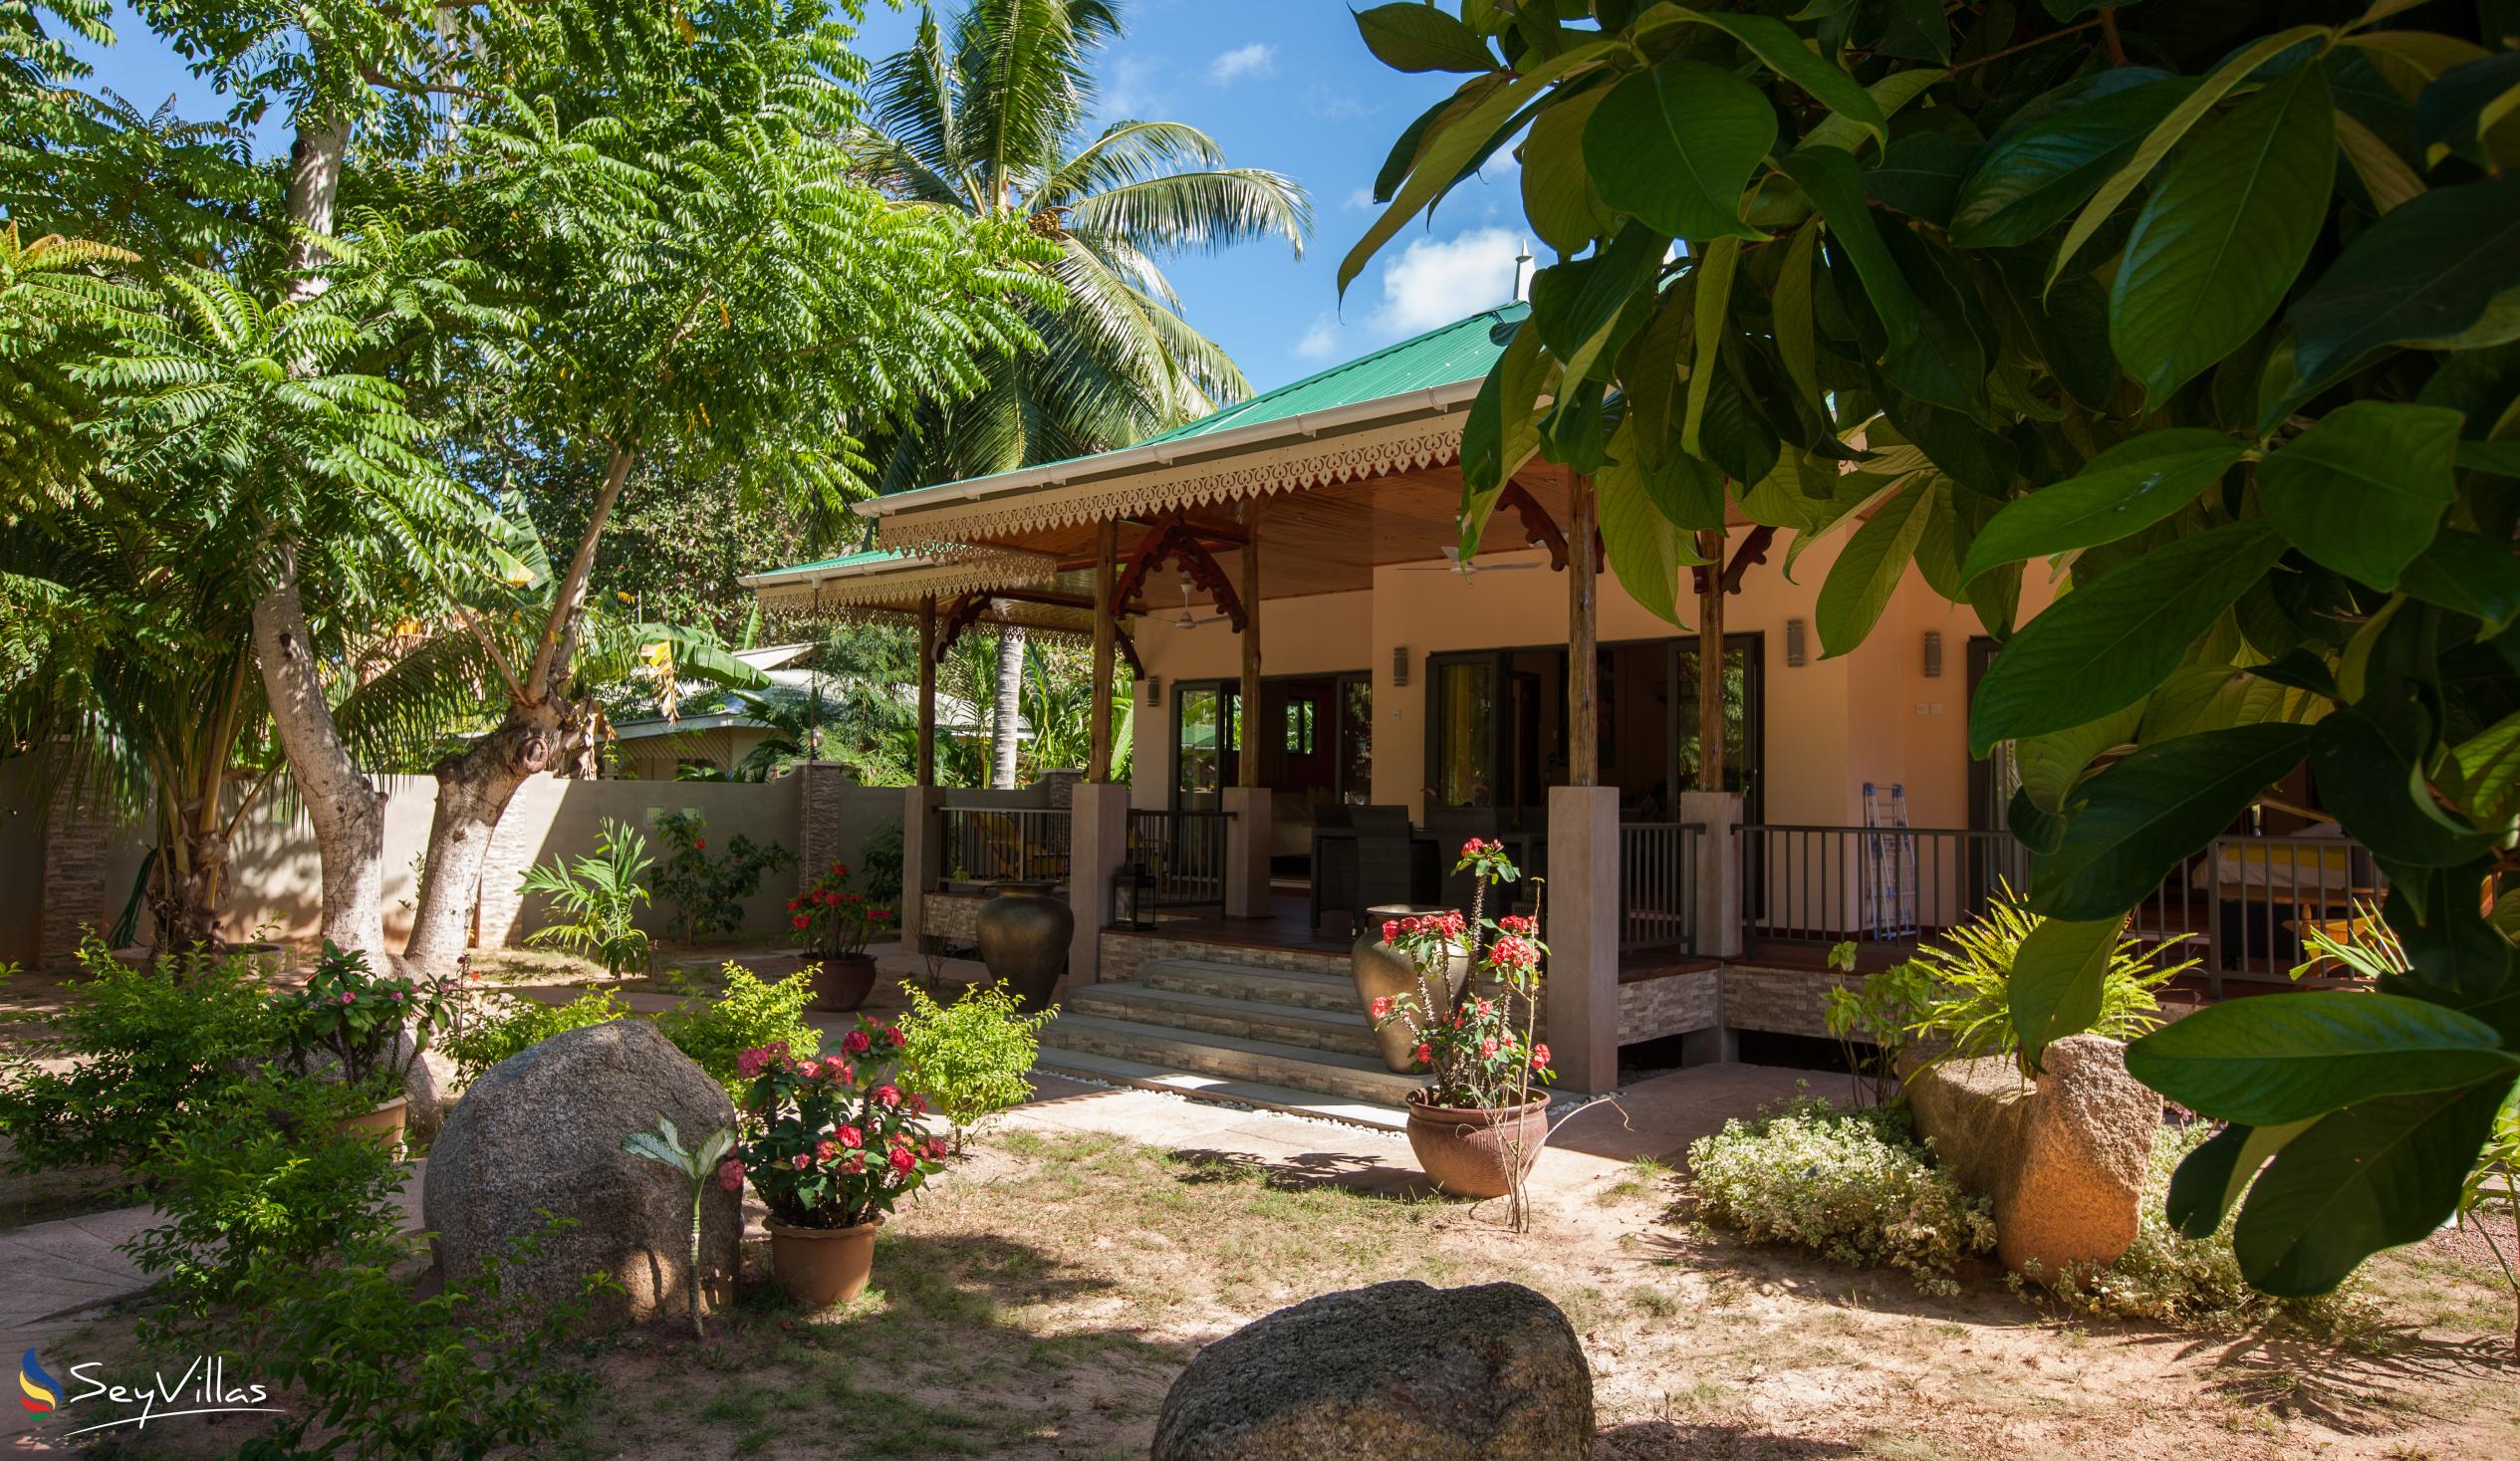 Photo 17: Casa de Leela - Outdoor area - La Digue (Seychelles)